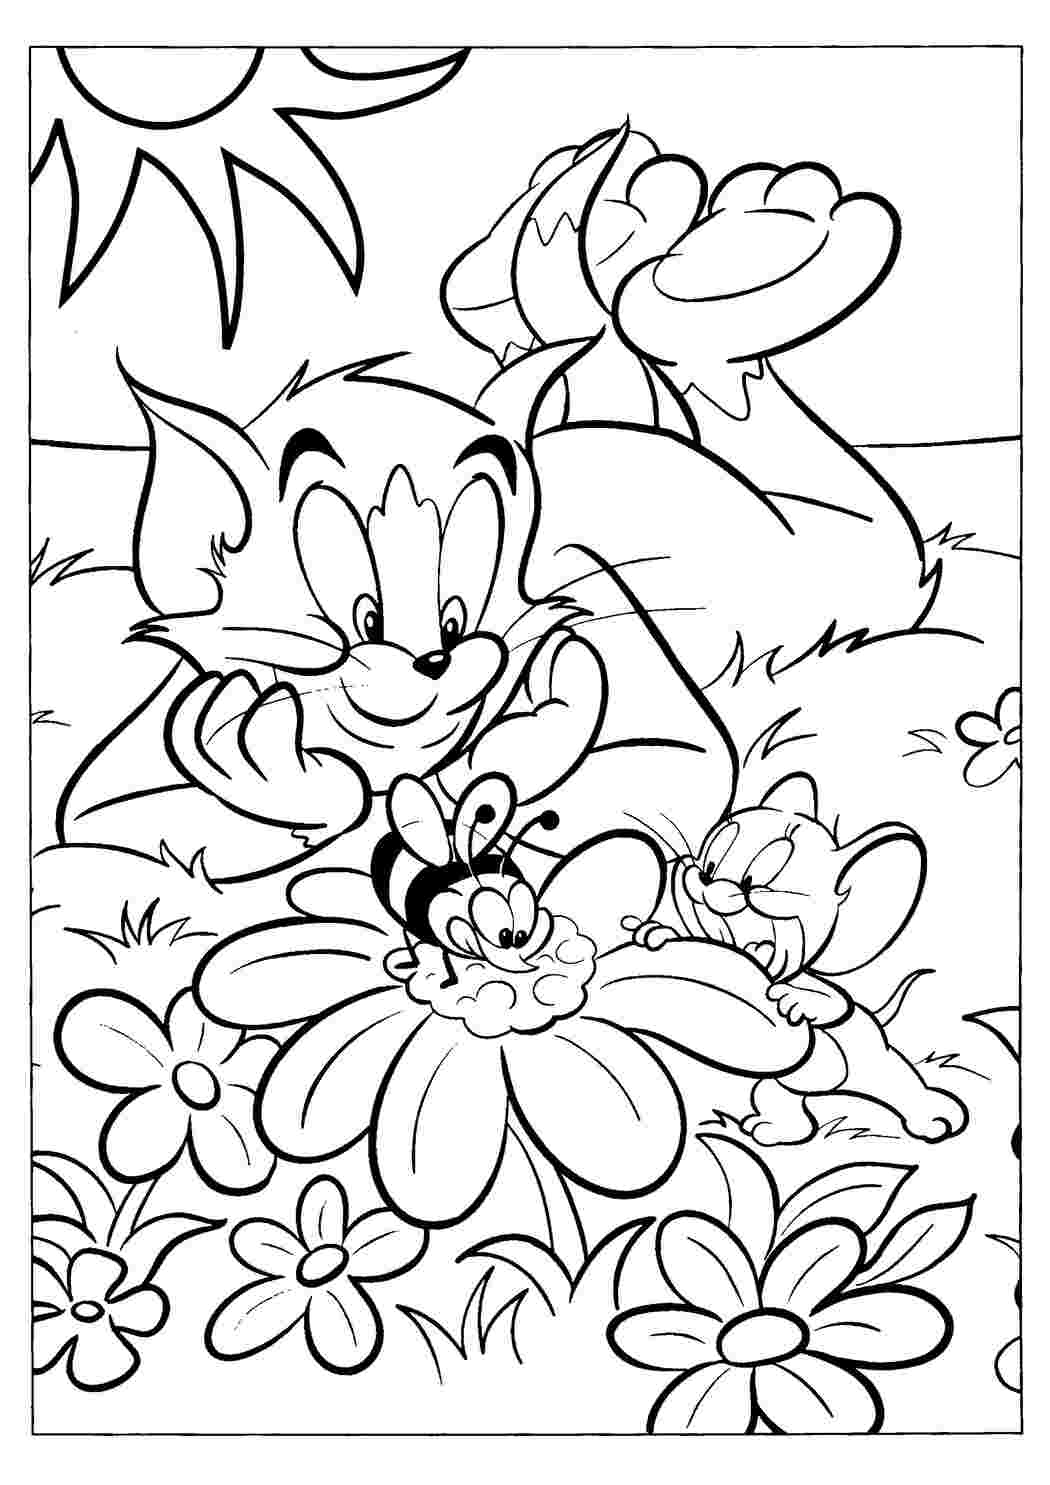 Раскраски картинки на рабочий стол онлайн Кот и мышка на лужайке из мультфильма том и джерри, пчелка на цветке Распечатать раскраски для мальчиков